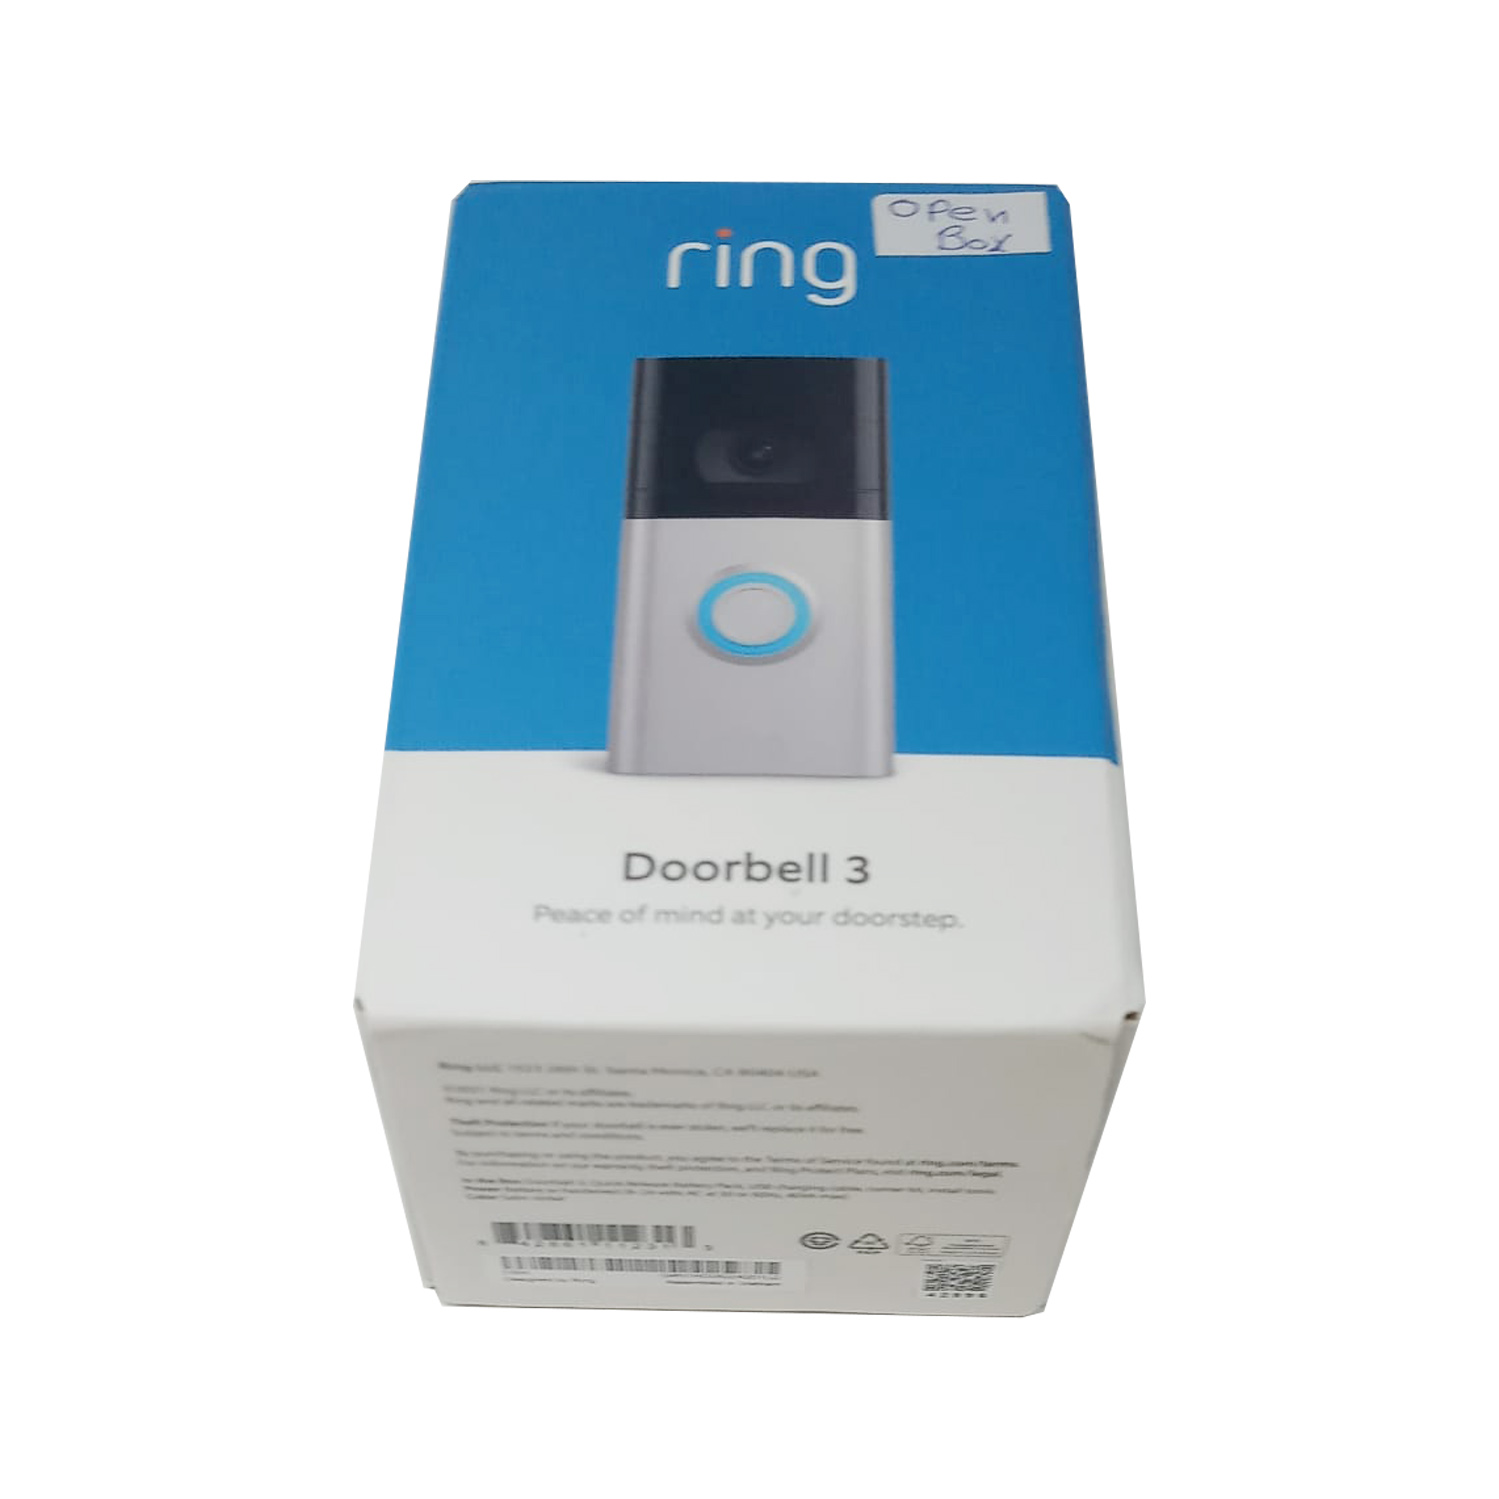 ring OB Ring Video Doorbell 3 Enhanced Wi-Fi,Easy installation 1080p HD Satin Nickel